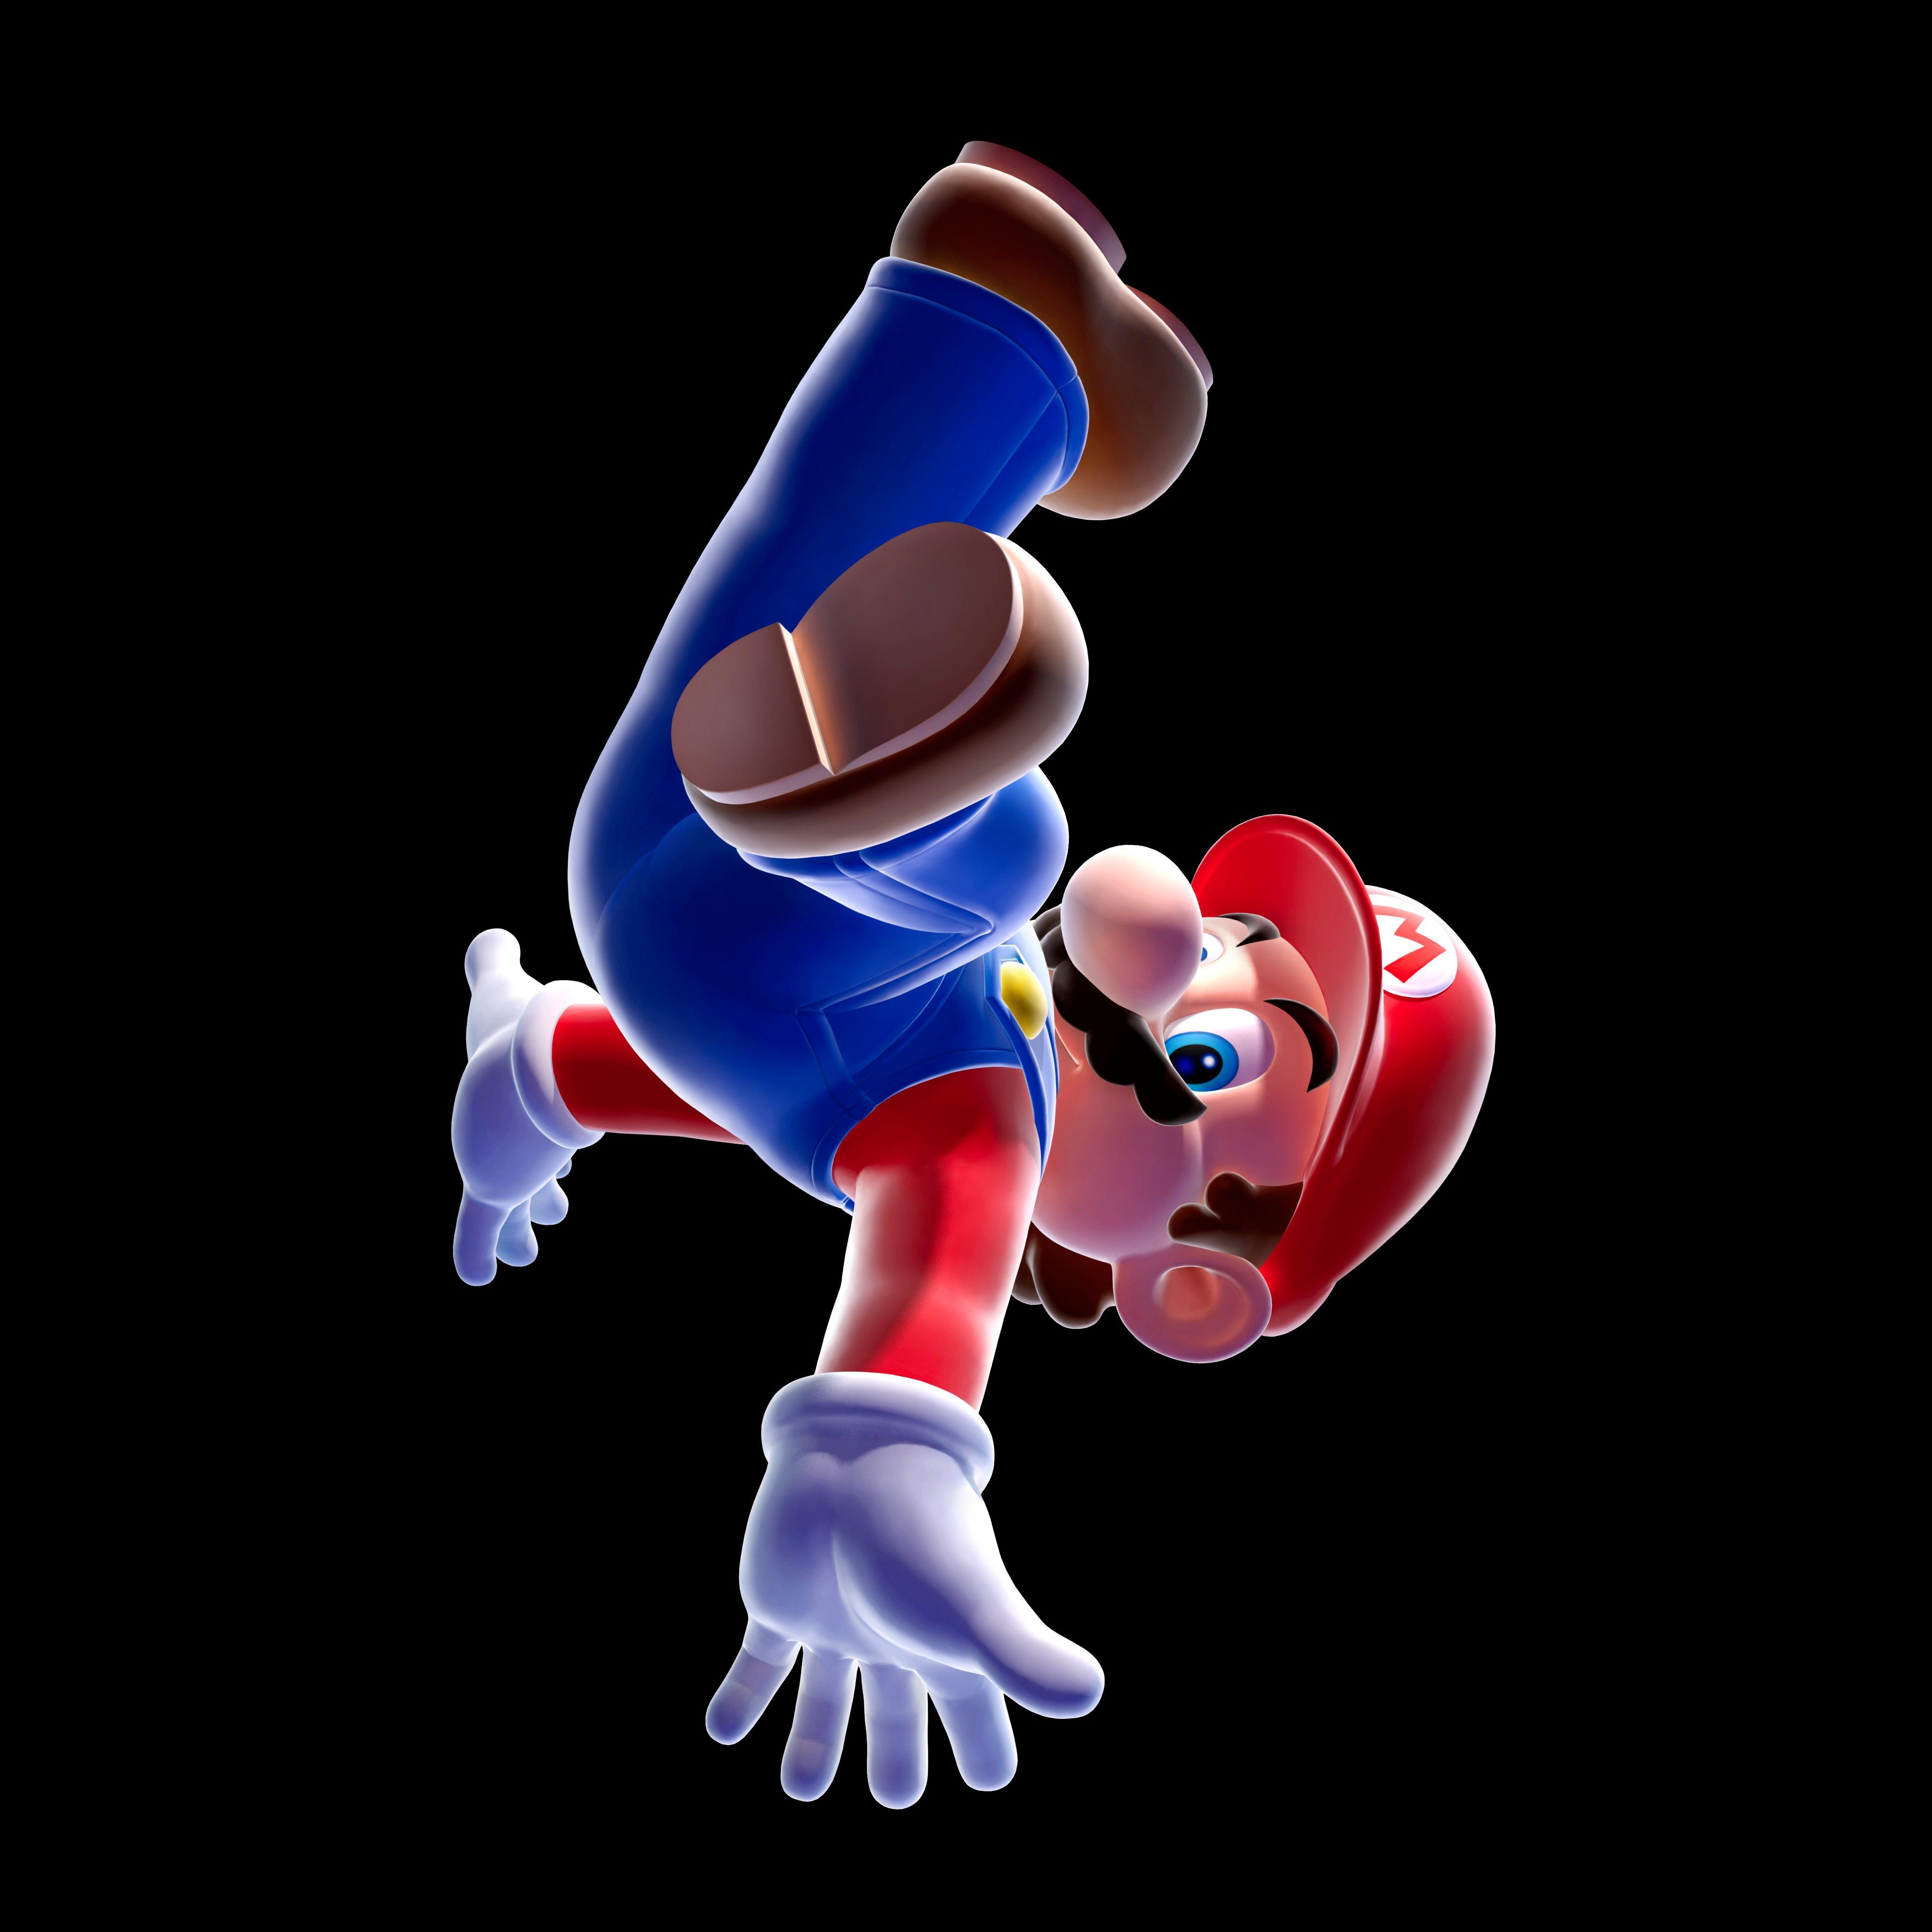 Super Mario Galaxy - Nintendo Wii